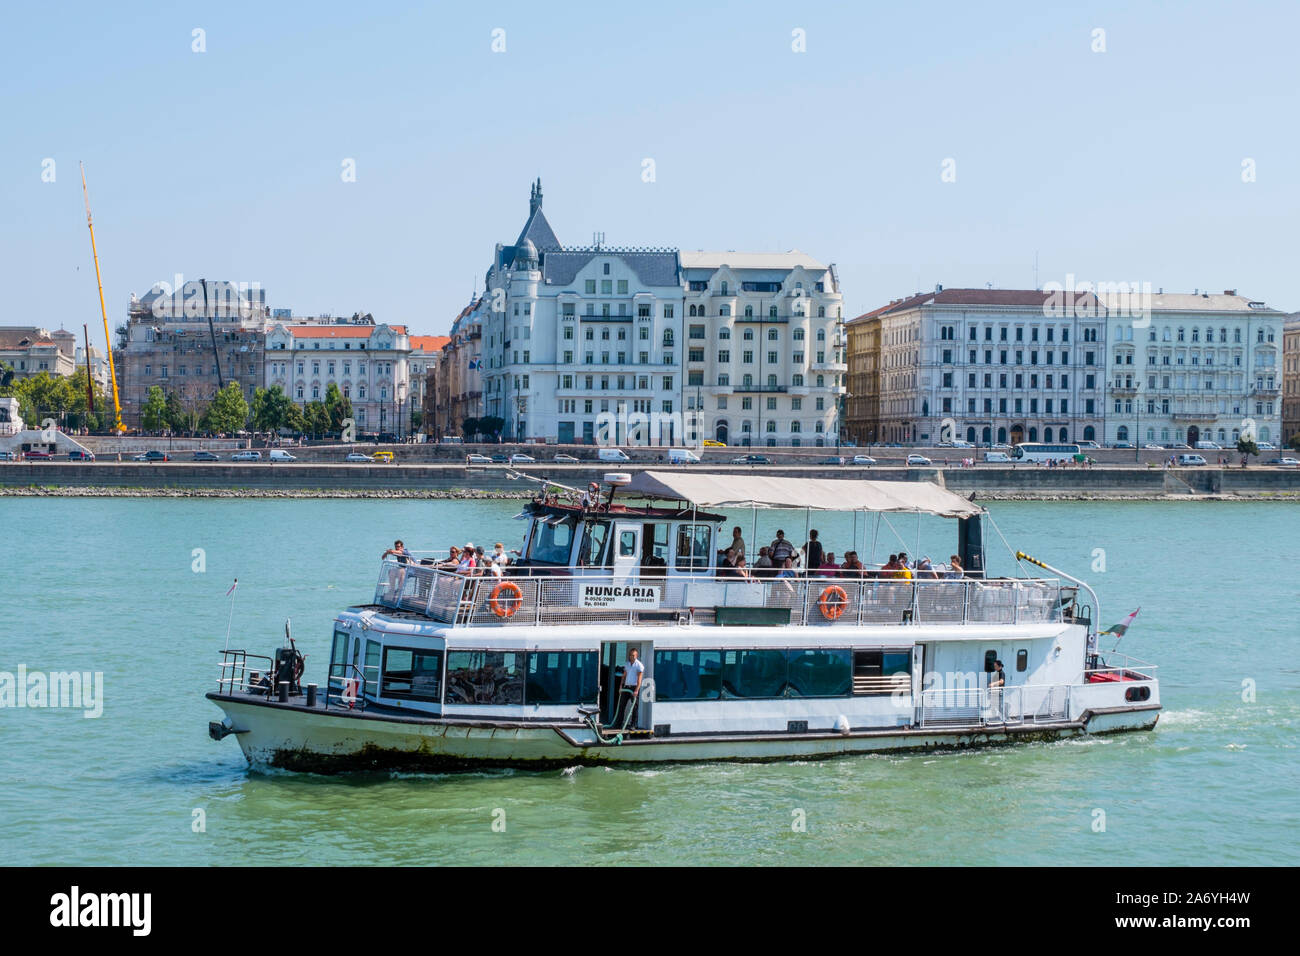 Transporte público en barco por el río Danubio, Budapest, Hungría Foto de stock